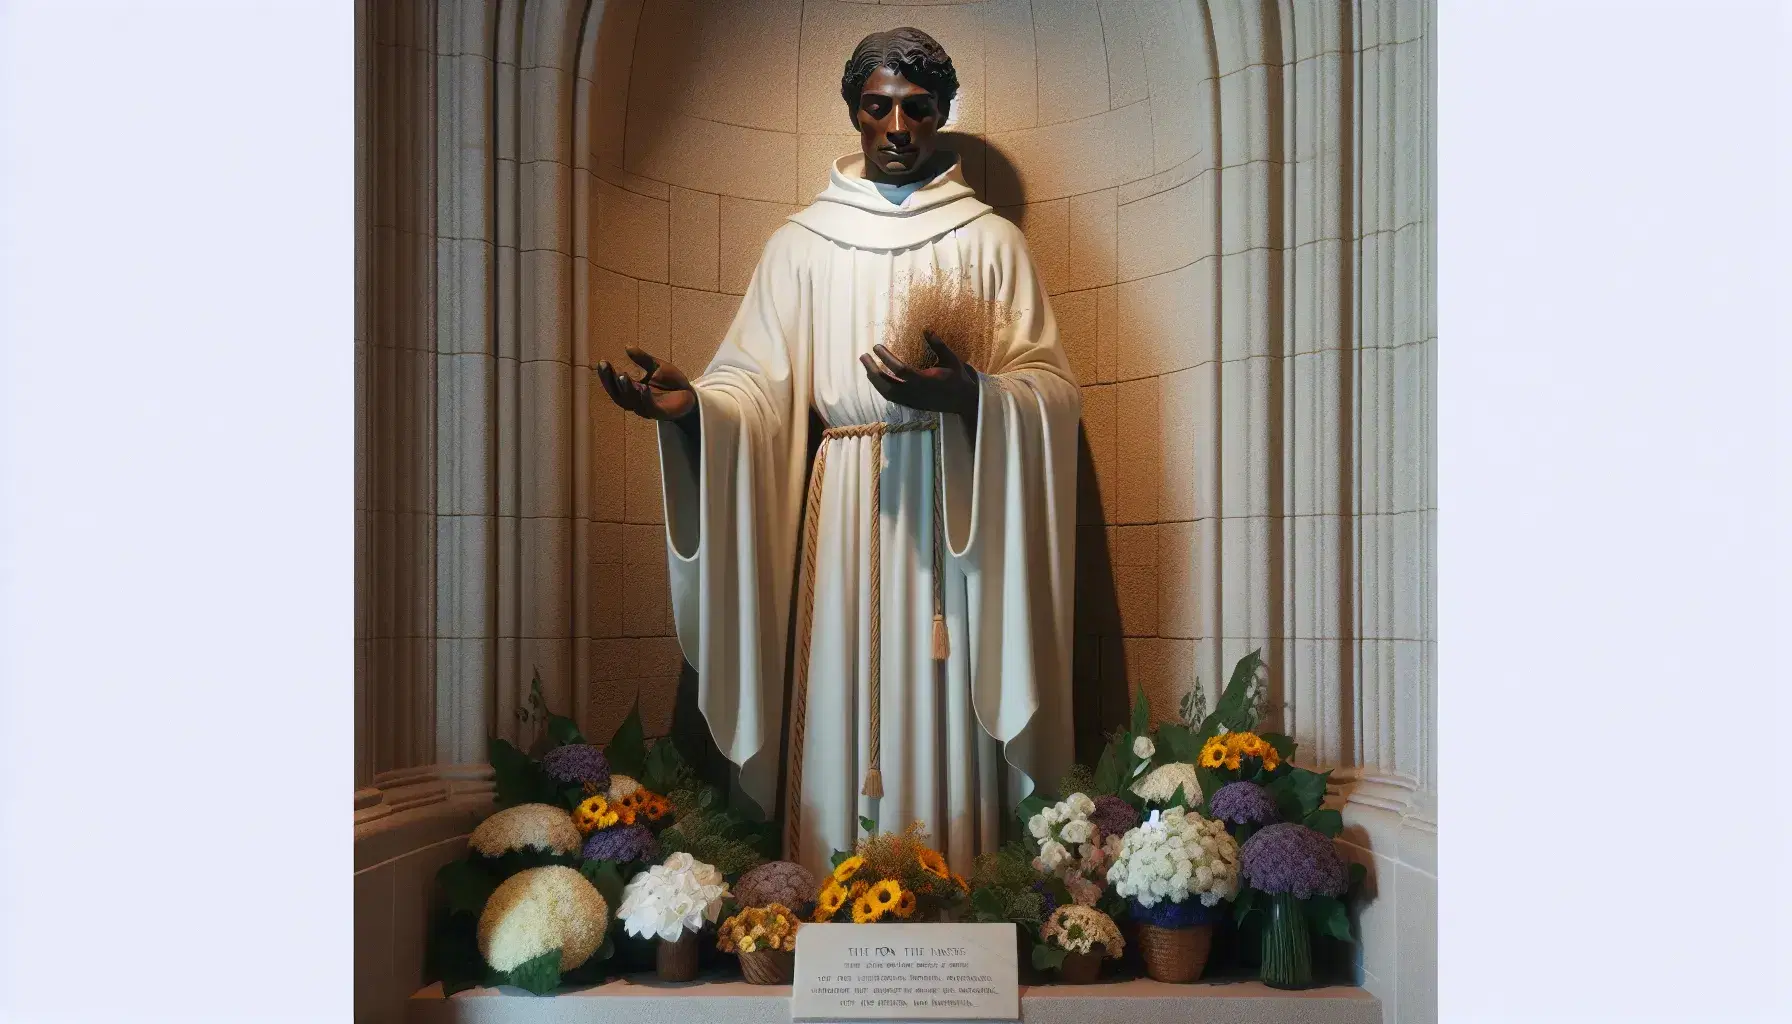 Estatua a tamaño real de hombre con hábito religioso blanco y capa negra en nicho de piedra, extendiendo la mano y sosteniendo un cepillo, rodeado de ramos de flores frescas.